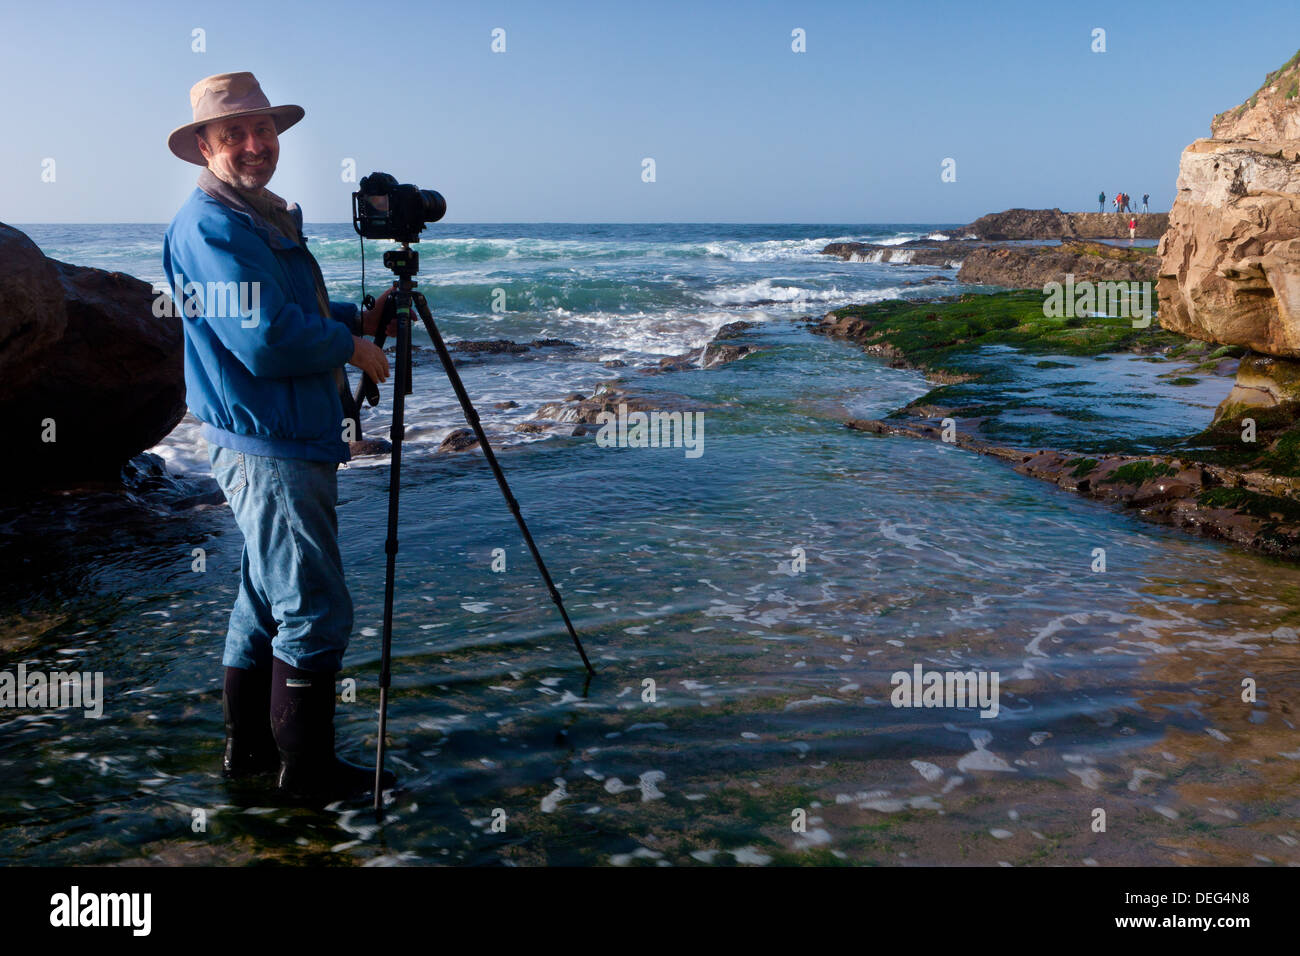 National Geographic Fotografen Frans Lanting bei der Arbeit an der Küste von Kalifornien. Stockfoto